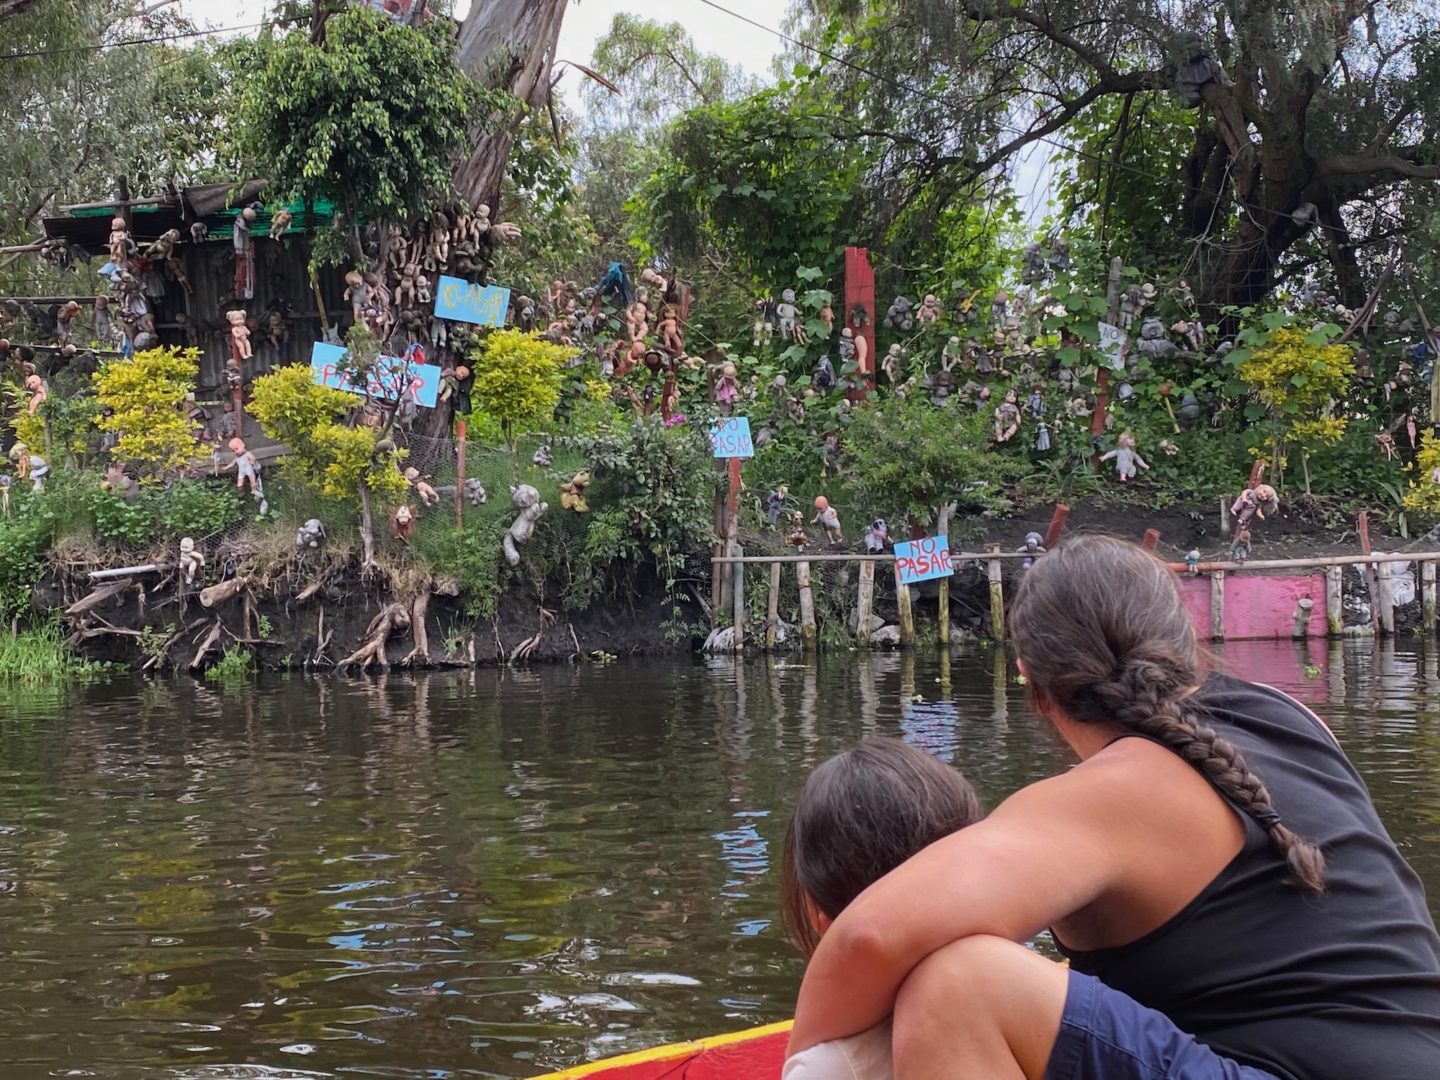 Floating Gardens of Xochimilco, Isla de las Munecas (Island of Baby Dolls), Mexico City, Mexico